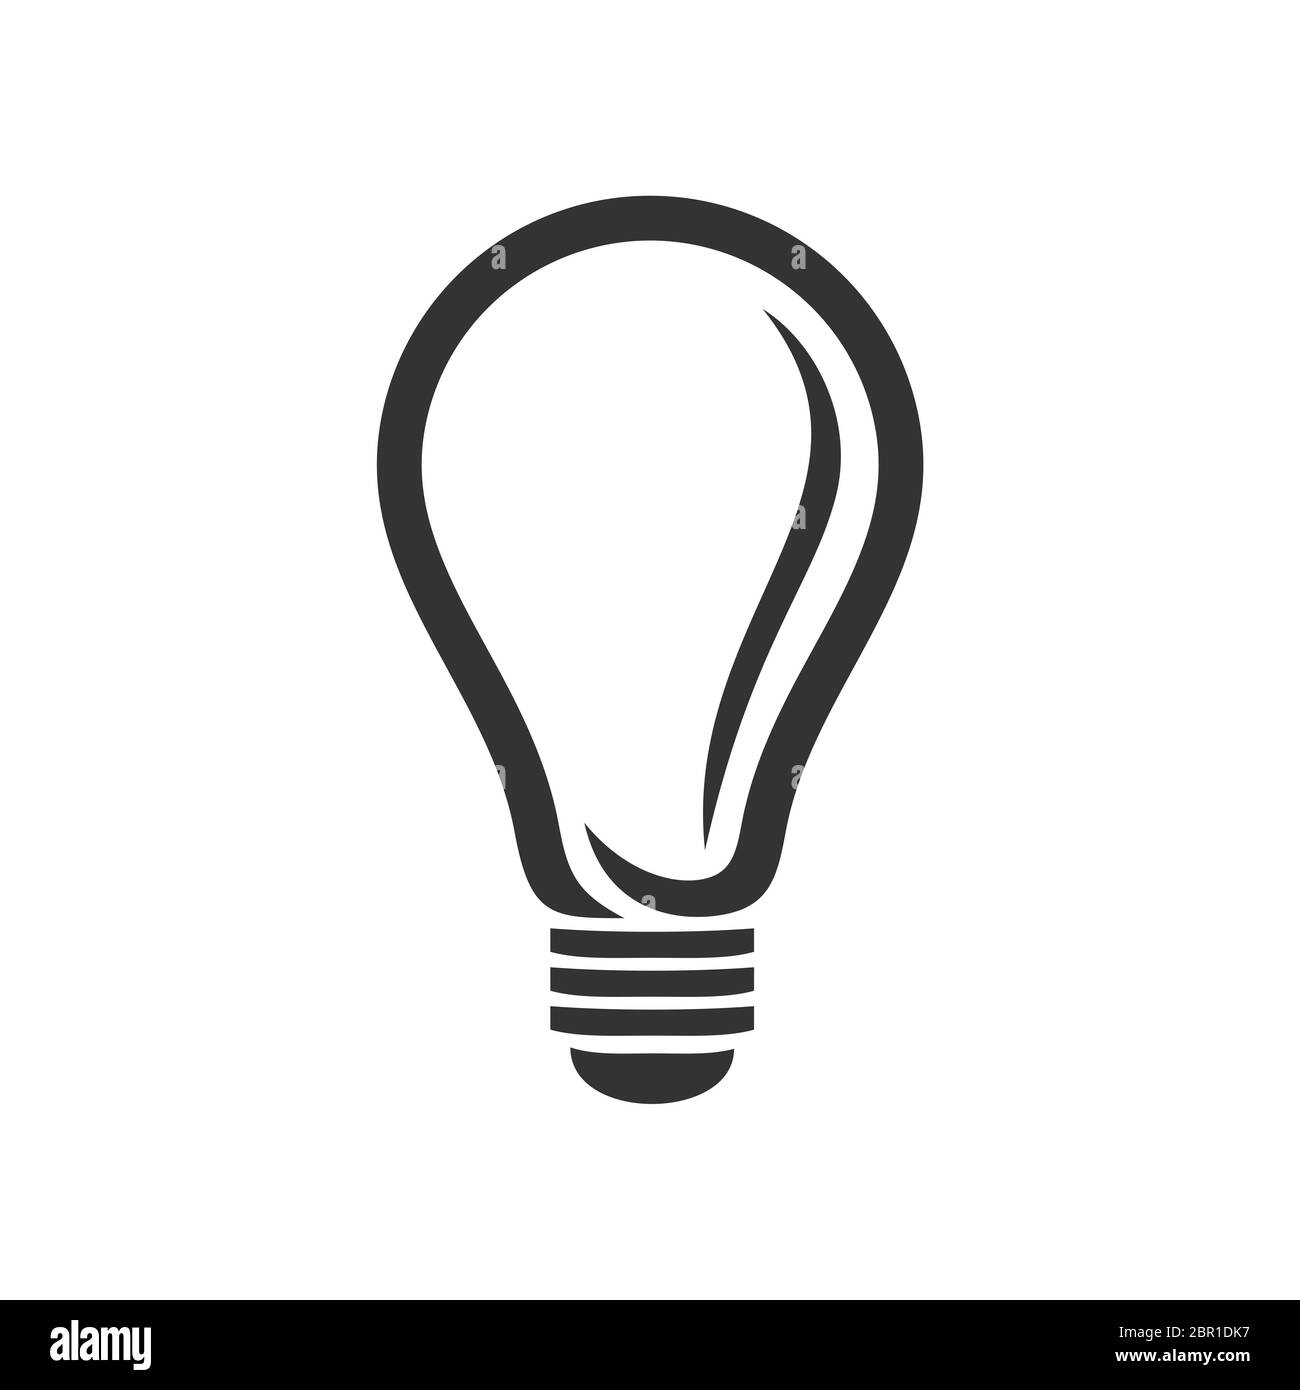 Light Bulb Lamp Logo Template Illustration Design. Vector EPS 10 Stock  Photo - Alamy